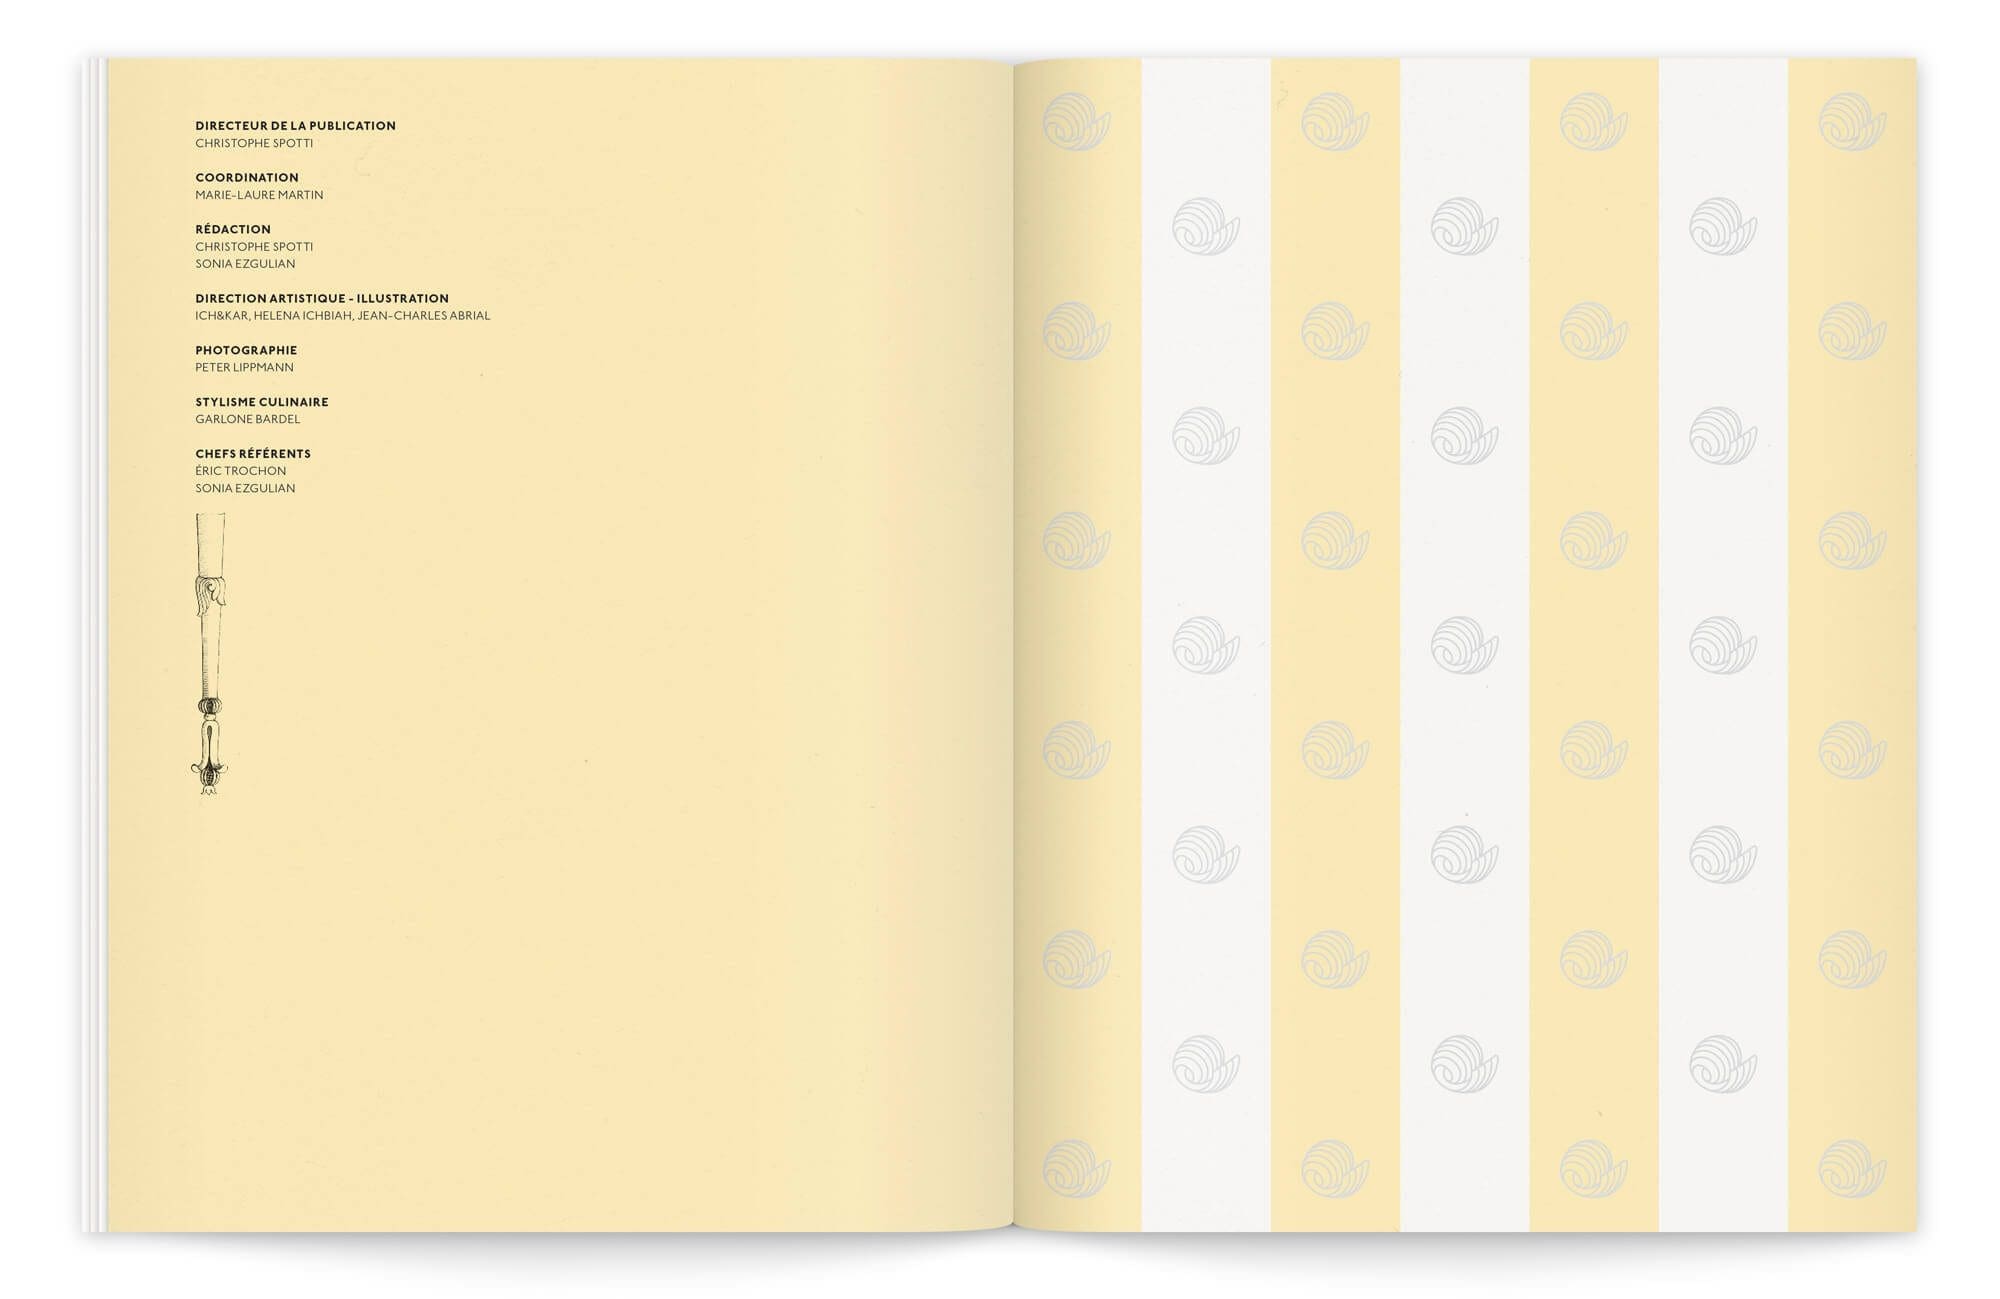 page de garde illustrée de motifs et bel aplat de couleurs pour finir cette brochure commerciale mais raffinée by ichetkar